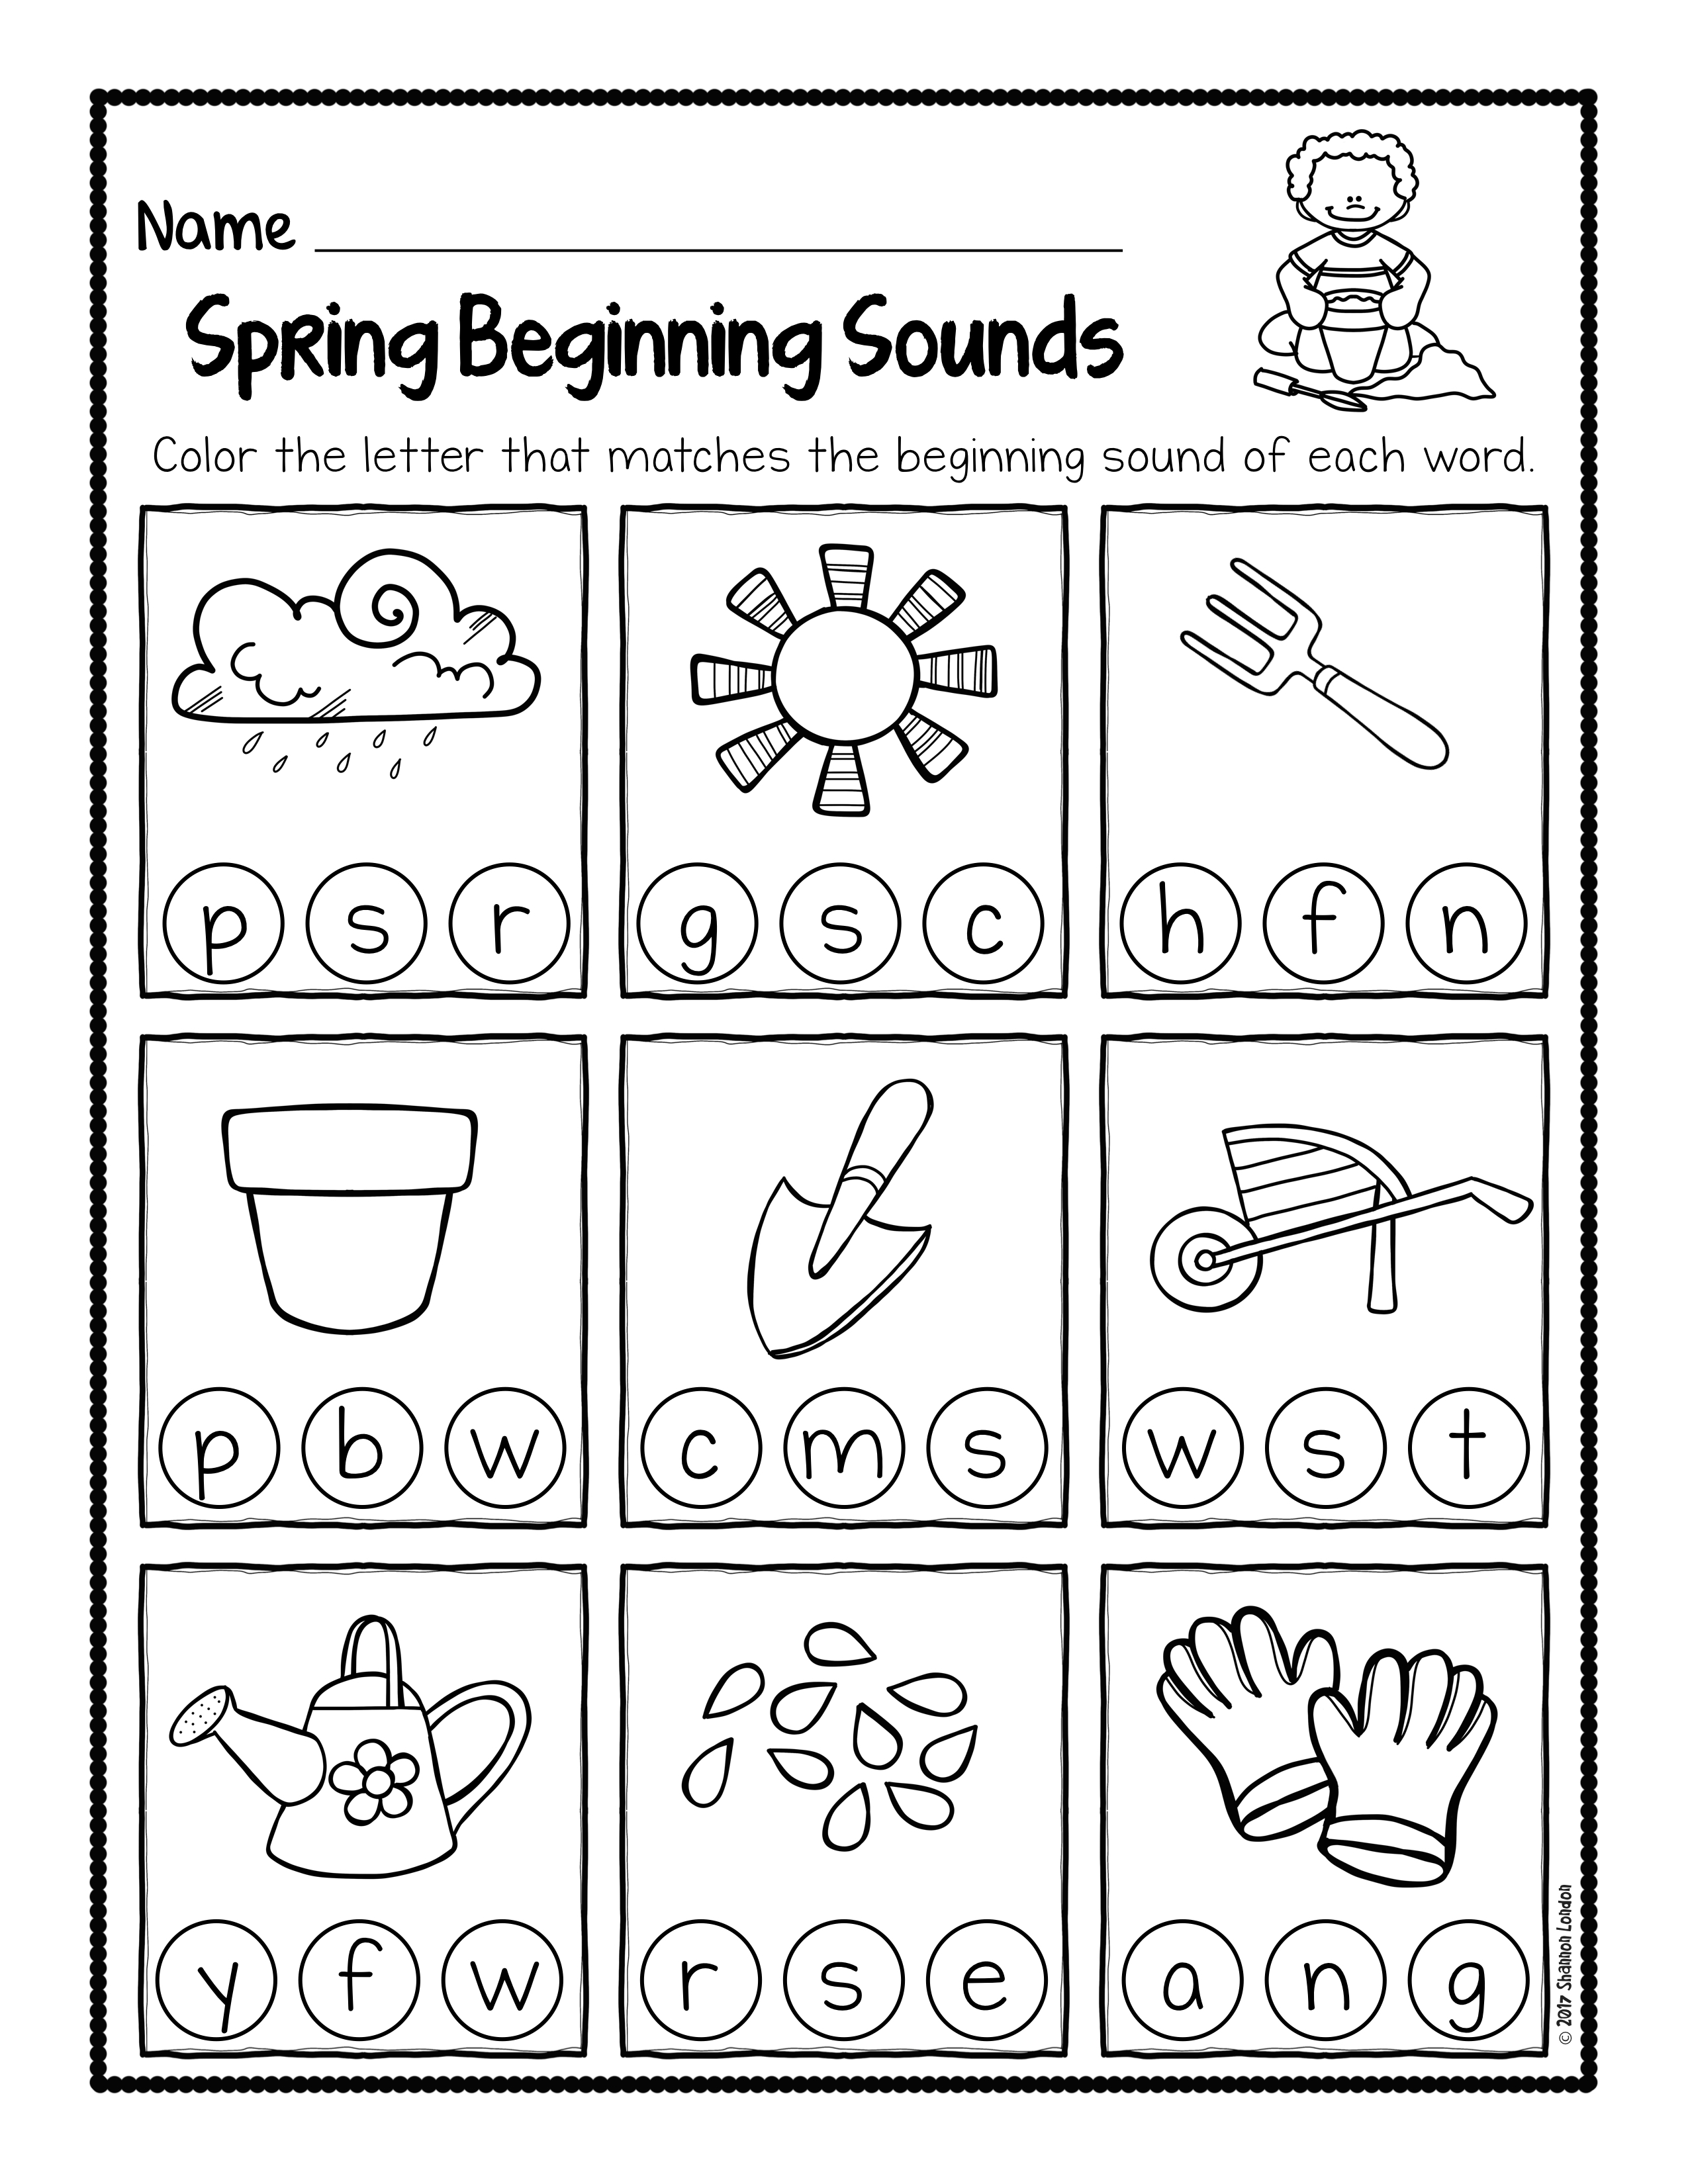 spring-beginning-sound-worksheets-002